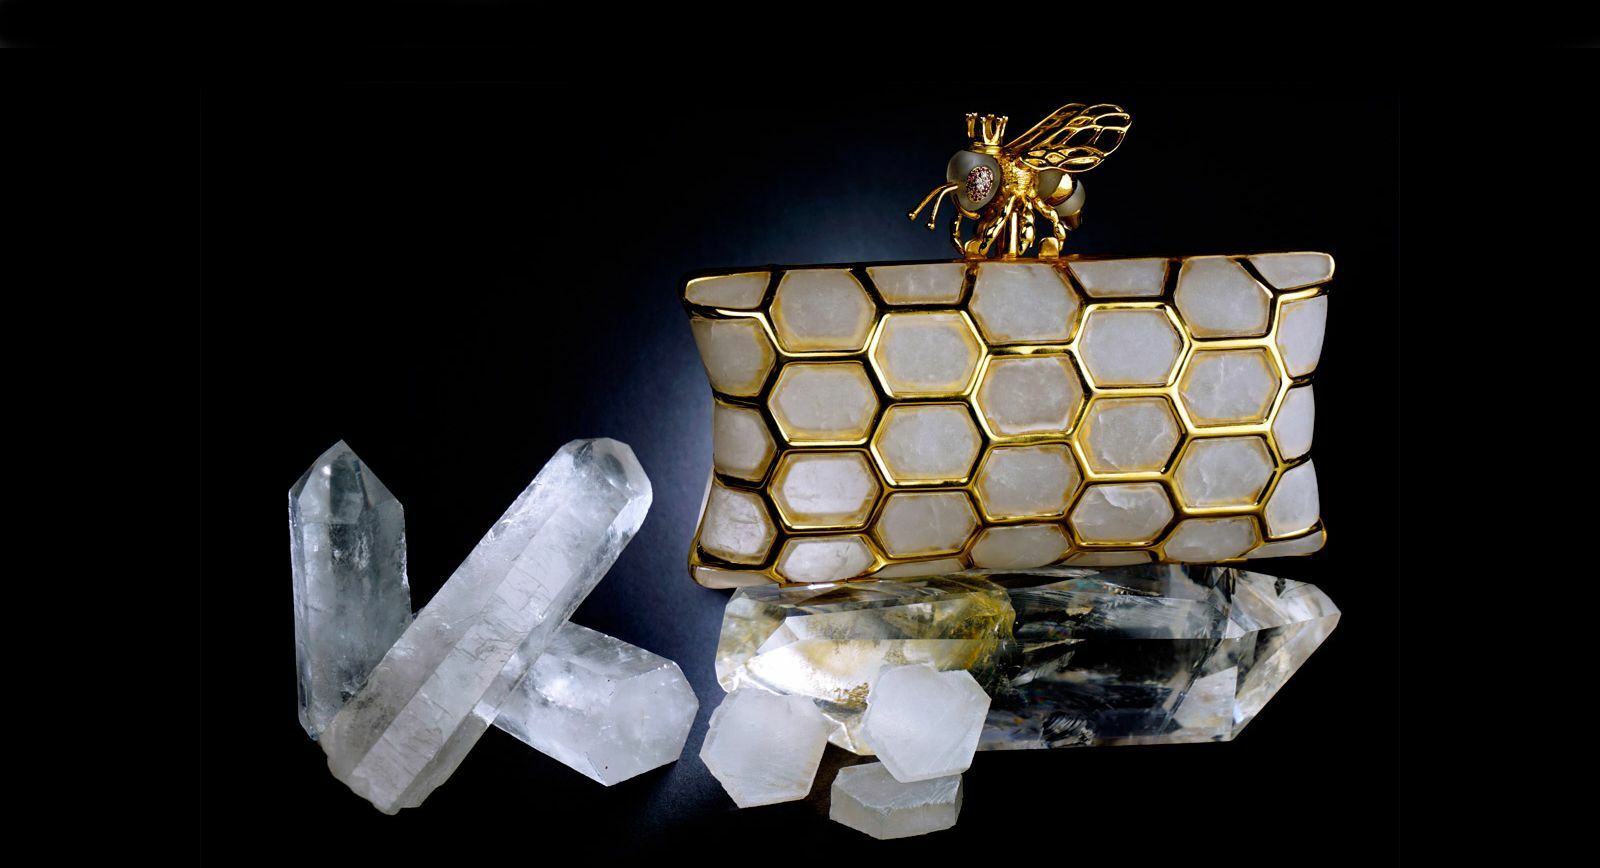 Клатч «Королева пчел» от L’AQUART- слияние моды и камнерезного дела